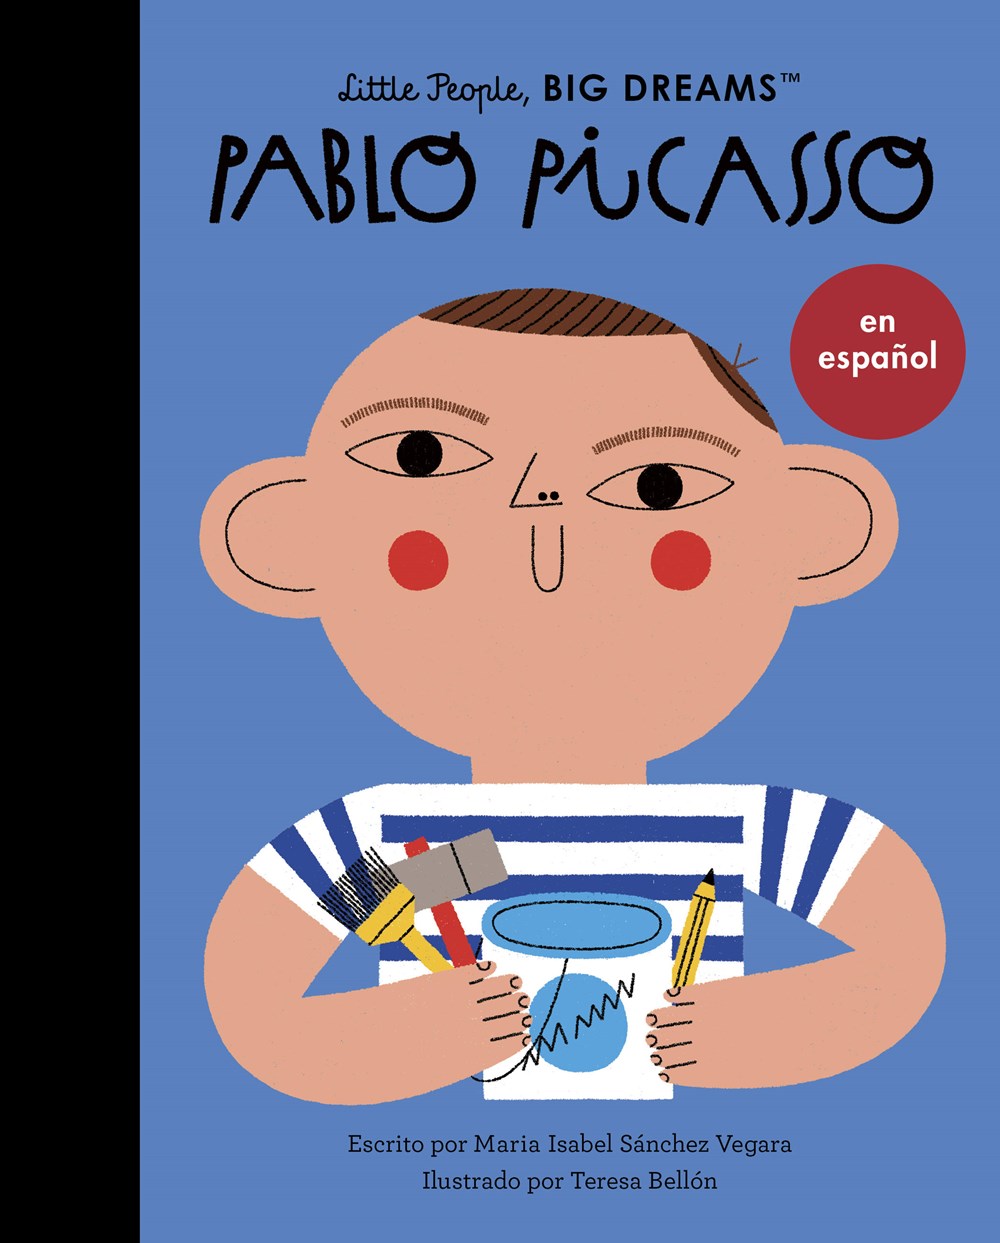 Little People, Big Dreams en Español: Pablo Picasso (Pasta Blanda / Paperback)